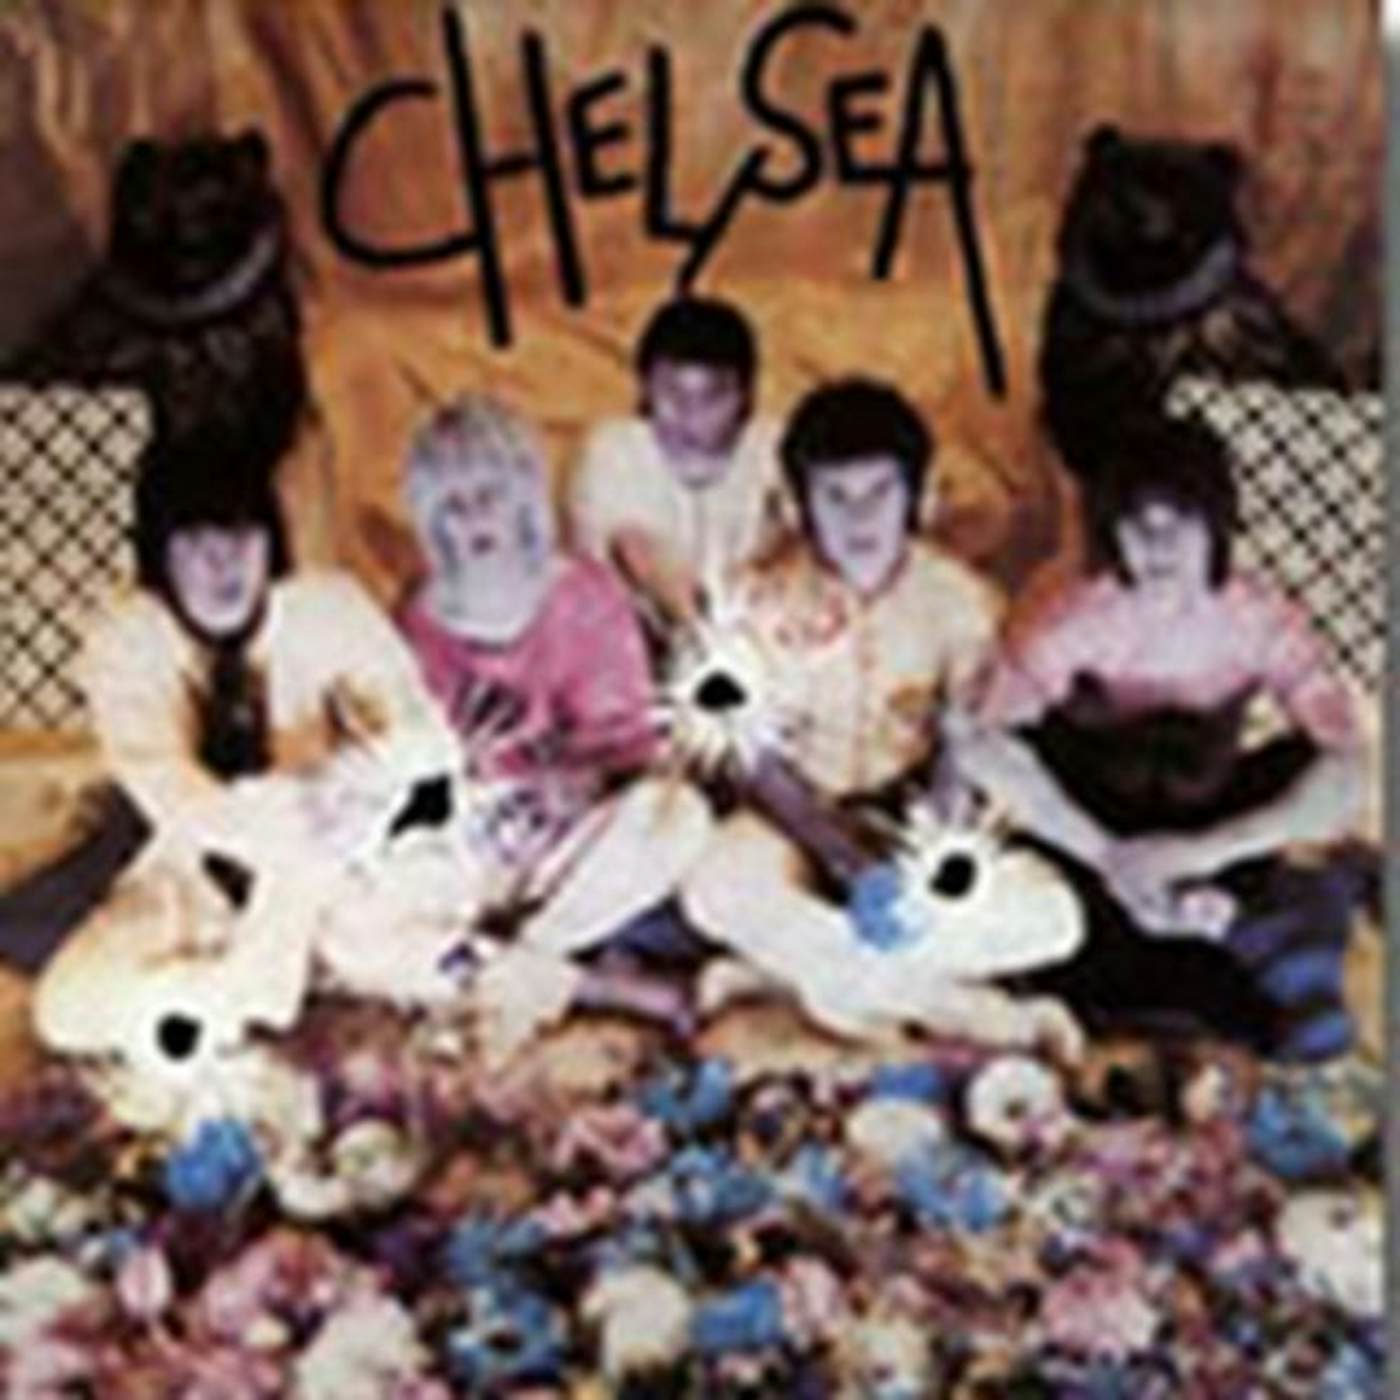 Chelsea CD - Chelsea